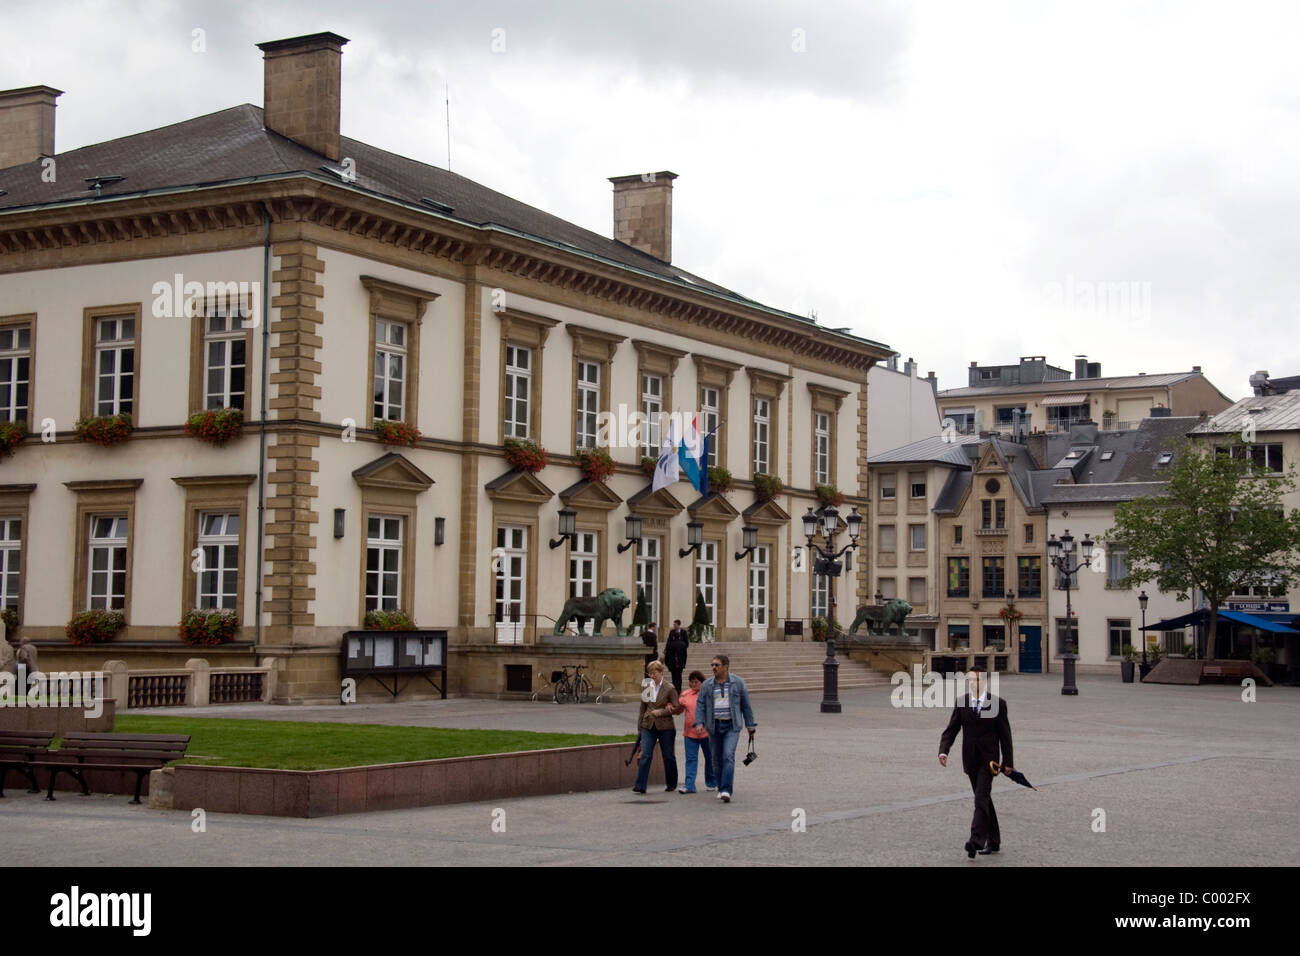 Luxembourg City Hall in Luxembourg City, Luxembourg. Stock Photo